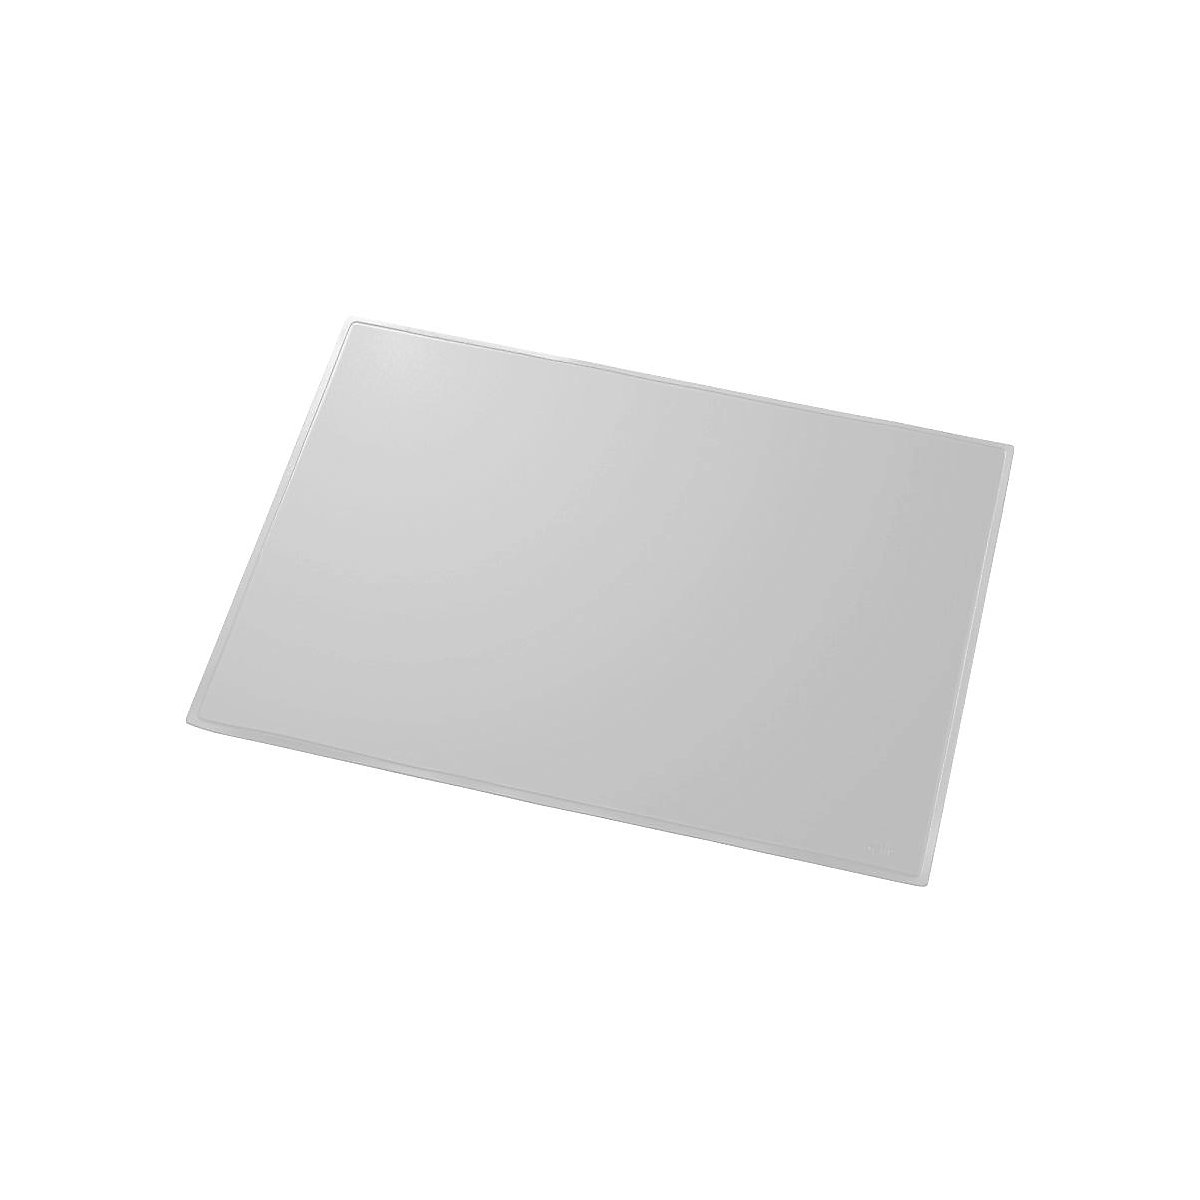 helit – Ecritoire, l x p 630 x 500 mm, lot de 5, gris clair, dos en film mousse, relevable